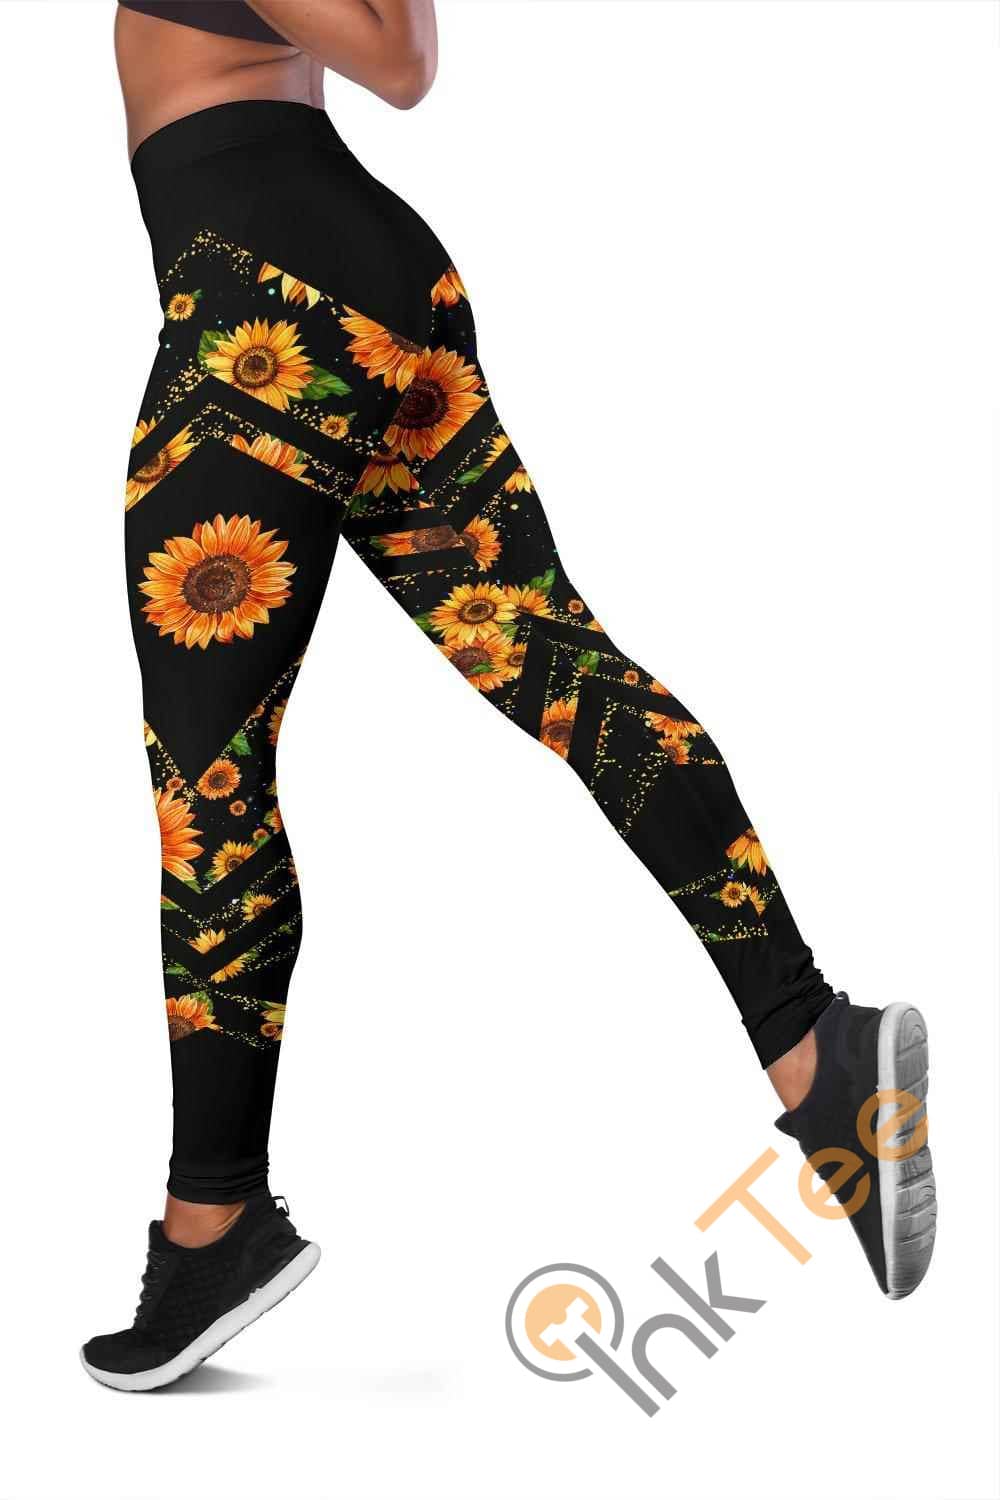 Inktee Store - Leggings 3D All Over Print For Yoga Fitness Women'S Leggings Image